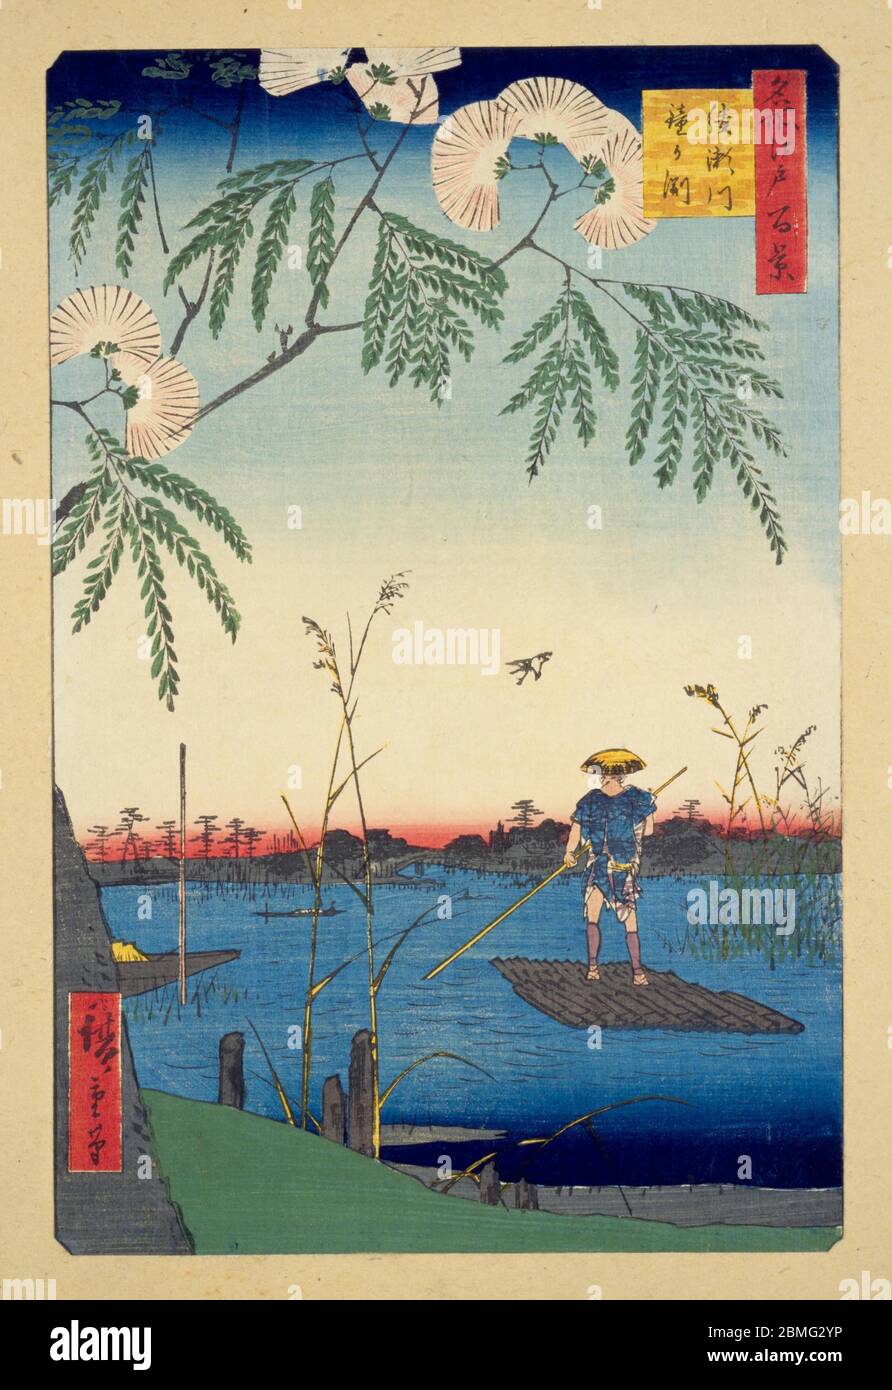 [ 1850er Japan - Japanischer Mann auf Holzfloß ] - EIN Mann navigiert auf einem Holzfloß am nördlichsten Punkt des Sumidagawa Flusses in Edo (heute Tokio), 1857 (Ansei 4). Dieser Holzschnitt ist Bild 63 in hundert berühmten Ansichten von Edo (名所江戸百景, Meisho Edo Hyakkei), einer Serie von Ukiyoe Künstler Utagawa Hiroshige (歌川広重, 1797–1858) erstellt. Es ist eine von 30 Sommerszenen der Serie. Titel: Der Ayase Fluss und Kanegafuchi (綾瀬川鐘か淵, Ayasegawa Kanegafuchi) 19. Jahrhundert Vintage Ukiyoe Holzschnitt. Stockfoto